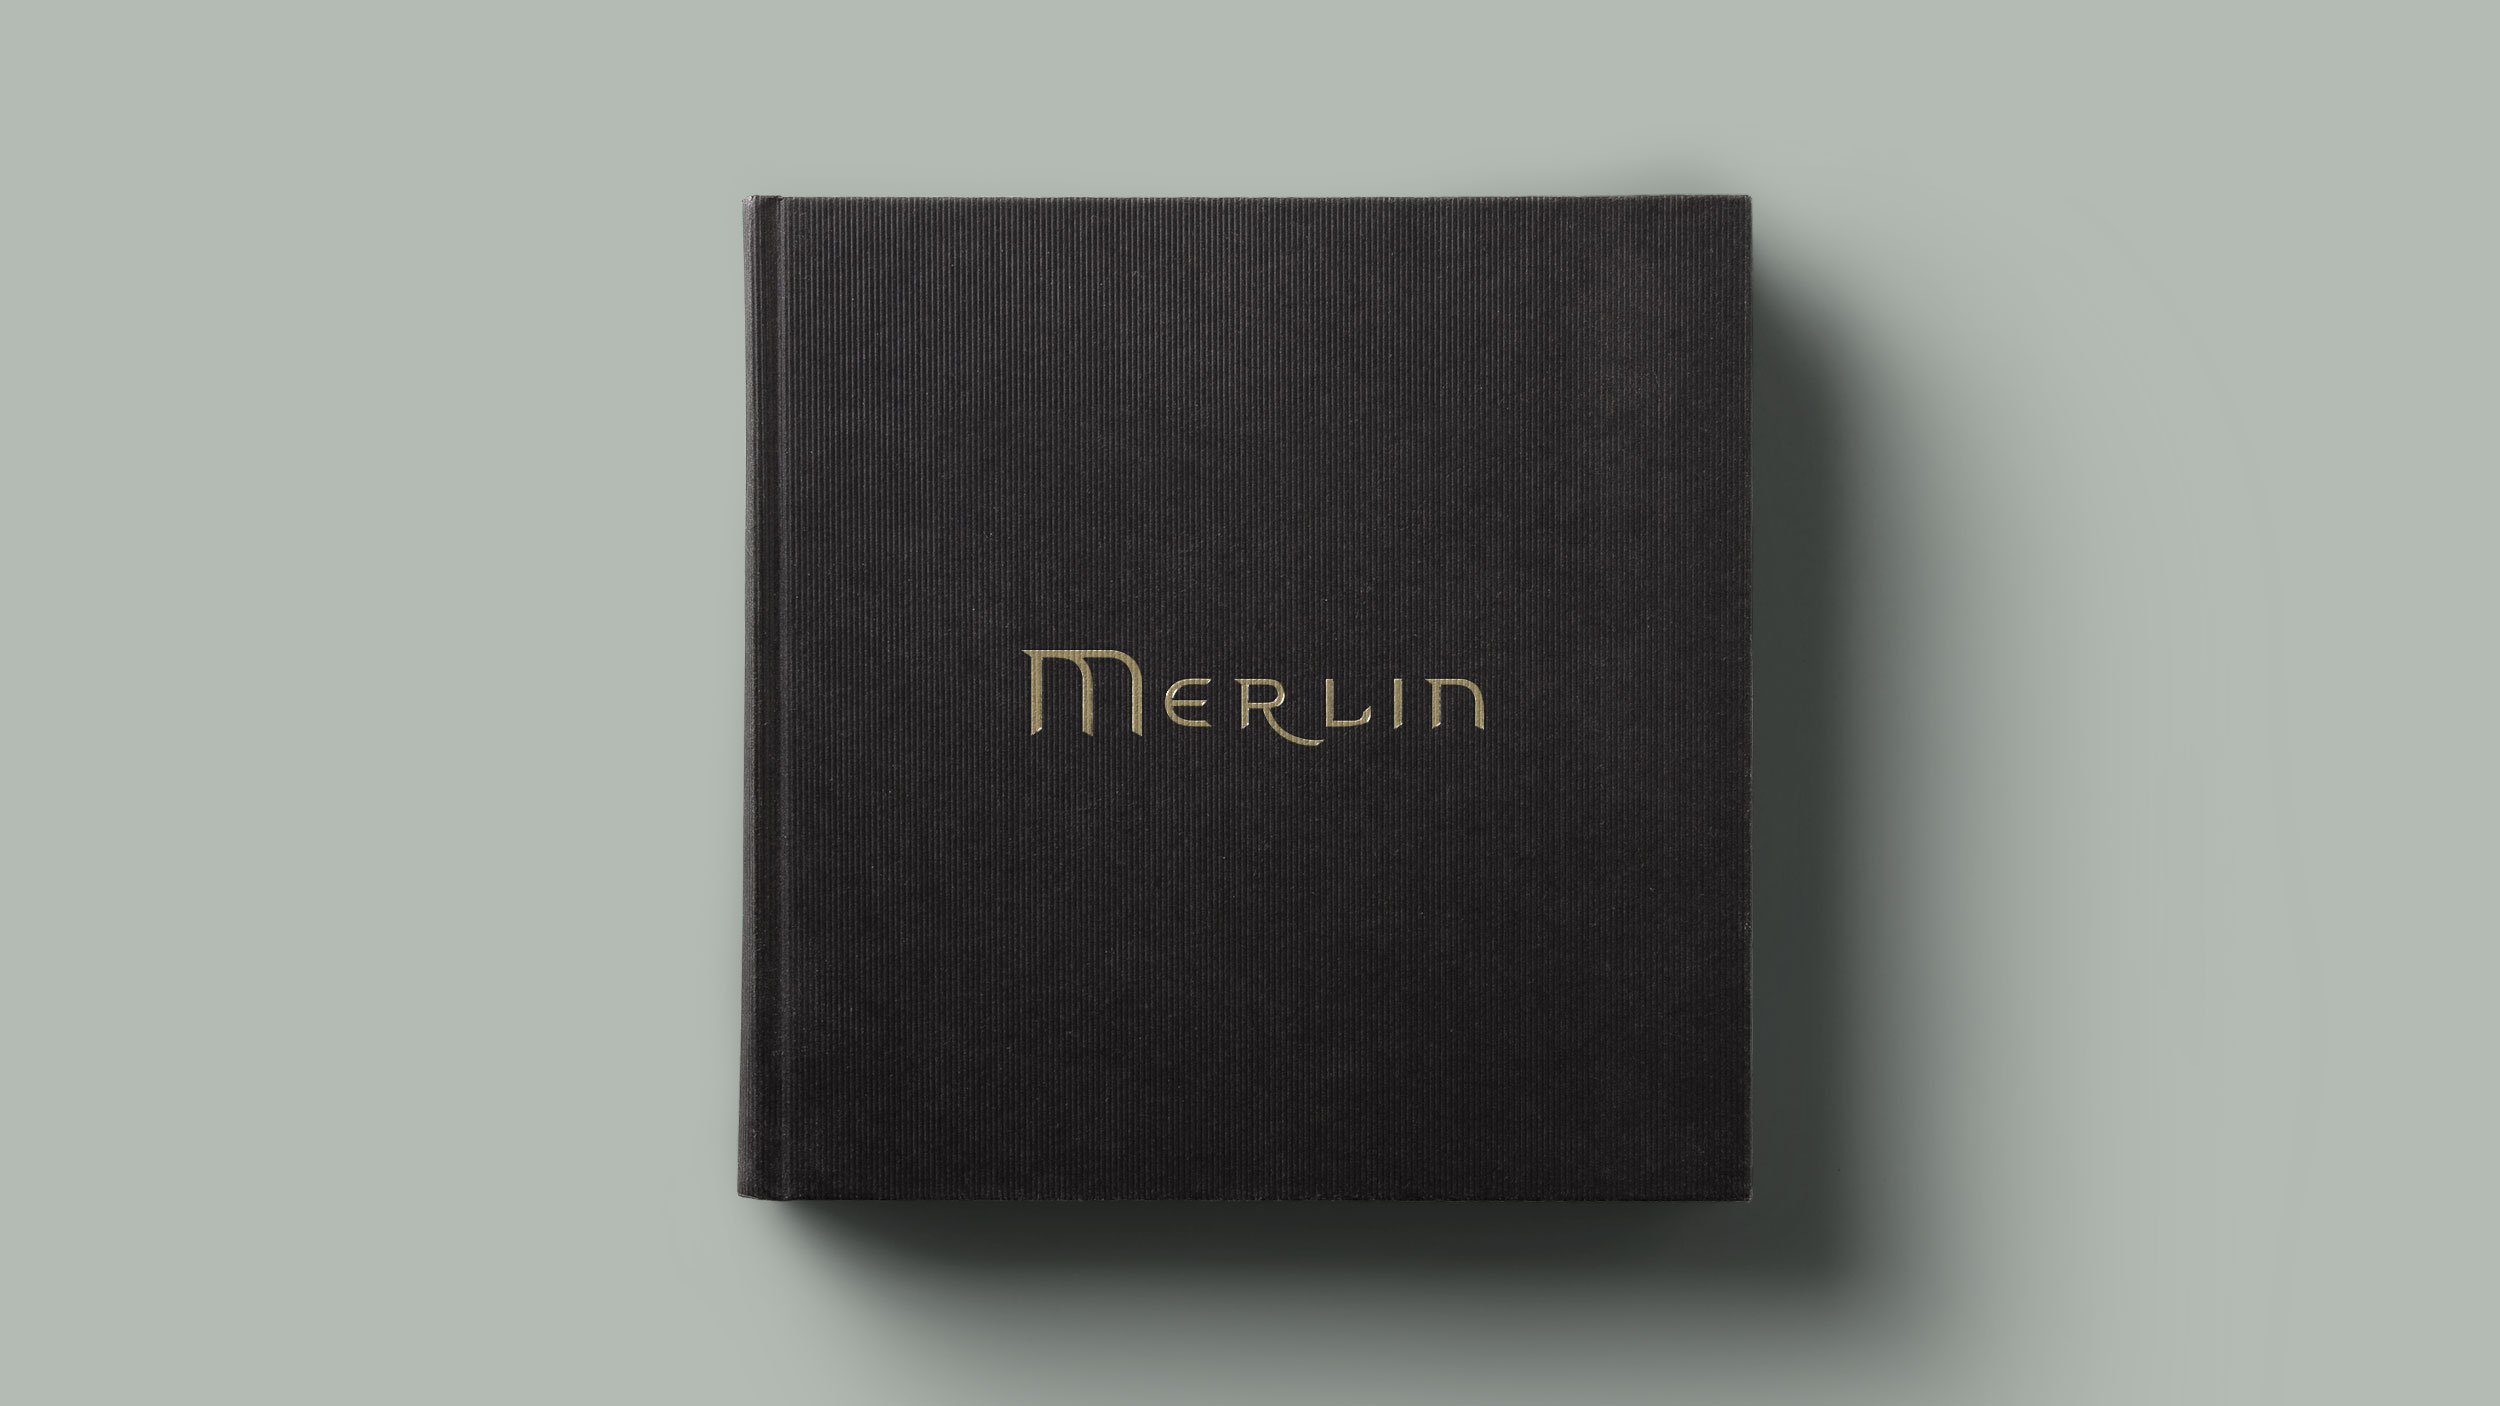 Adventures of Merlin Book Design